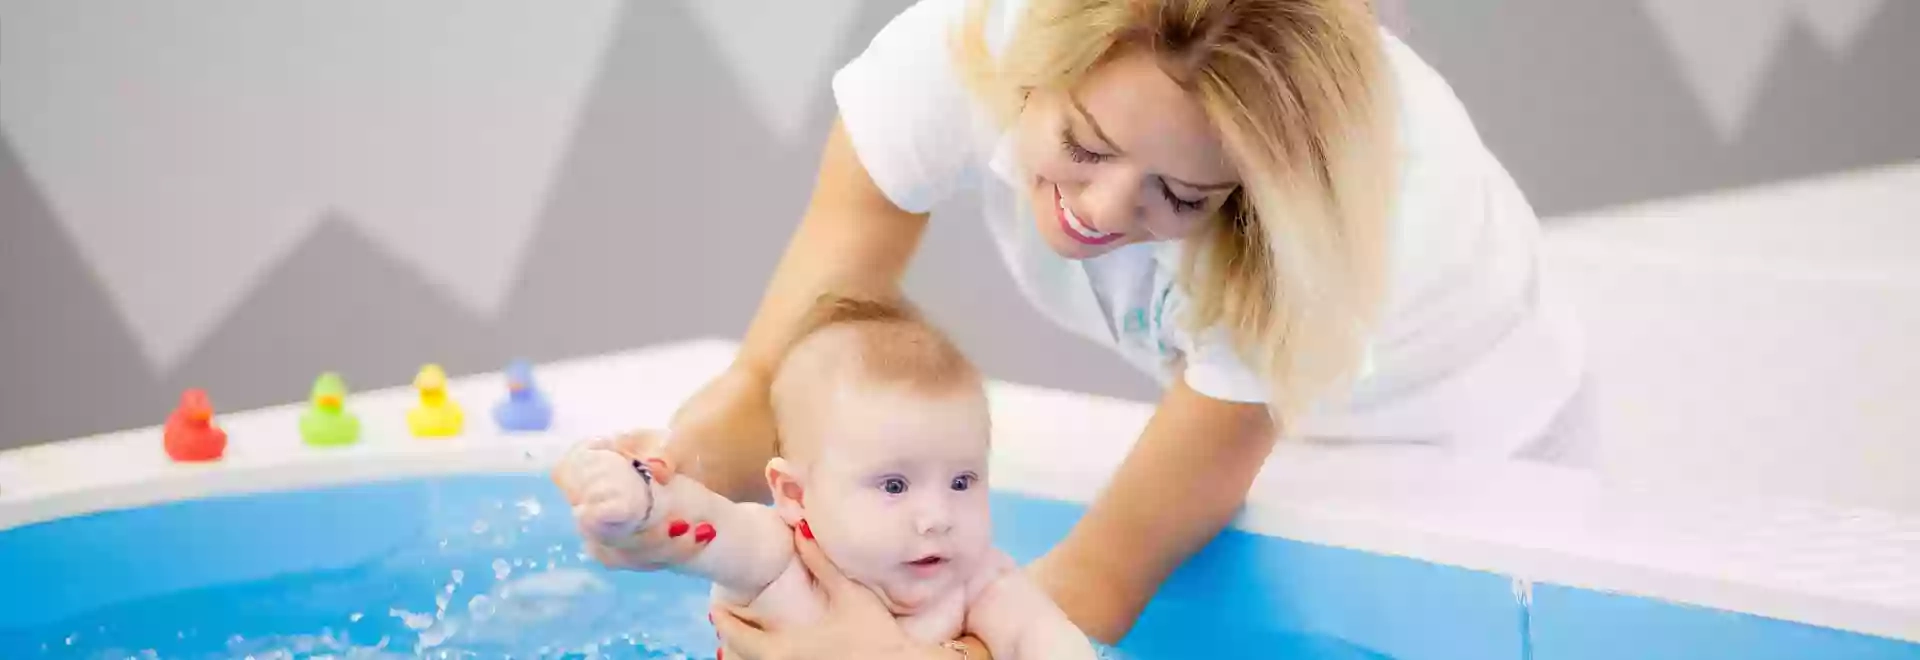 Baby Spa - бассейн для детей